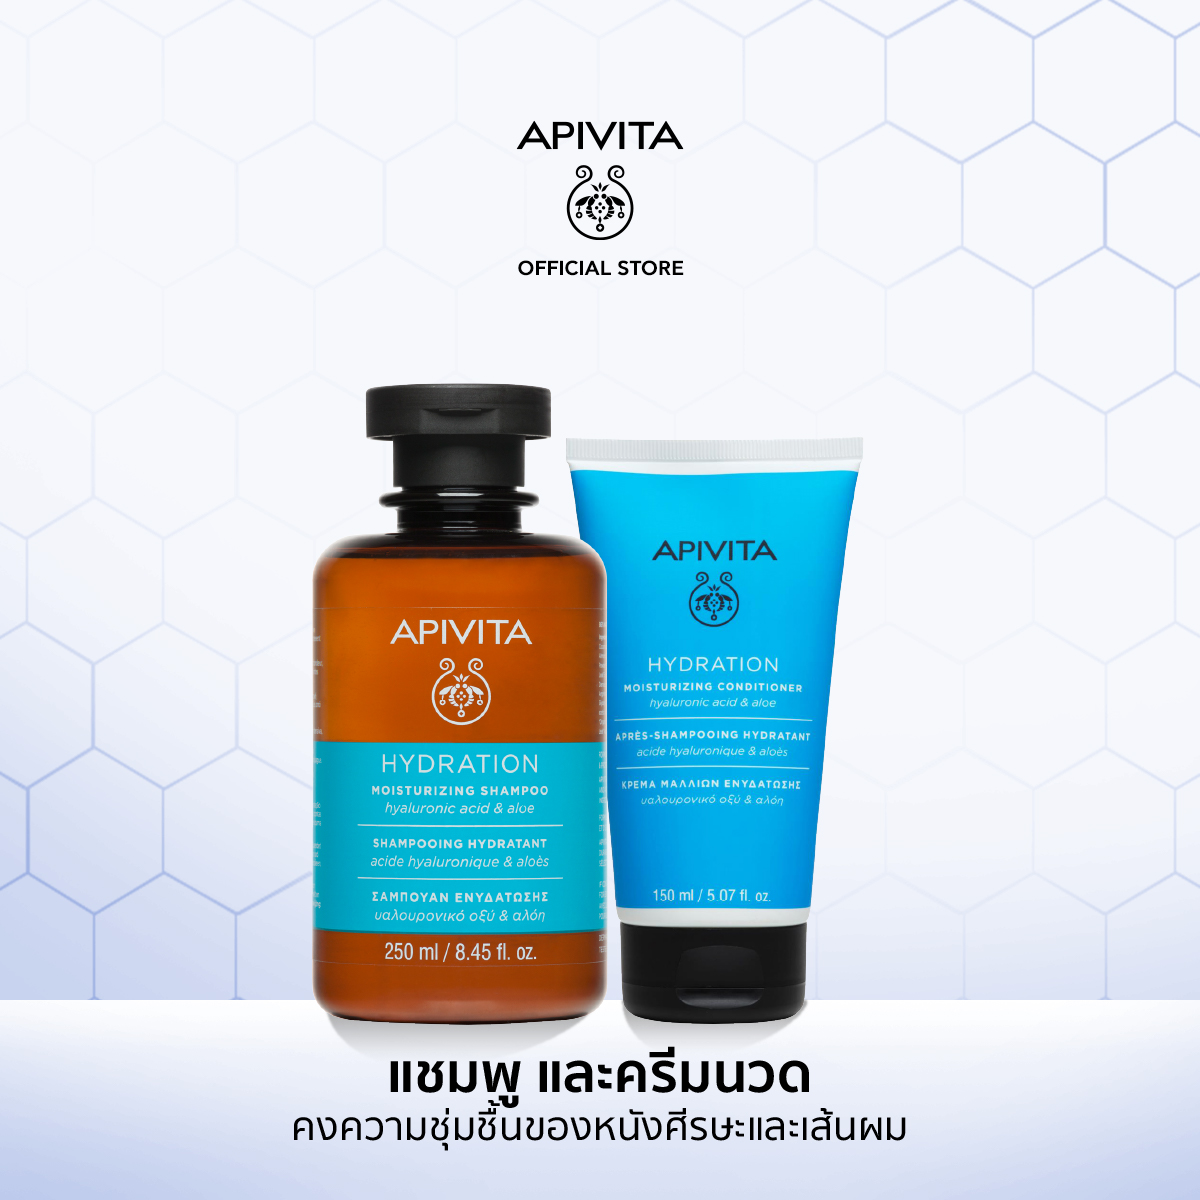 ราคา [Pack 2] APIVITA แชมพูและครีมนวดสูตรเพิ่มความชุ่มชื้นให้หนังศีรษะและเส้นผม Moisturizing Shampoo Hyaluronic Acid & Aloe 250ml + Conditioner Hyaluronic Acid & Aloe 150ml